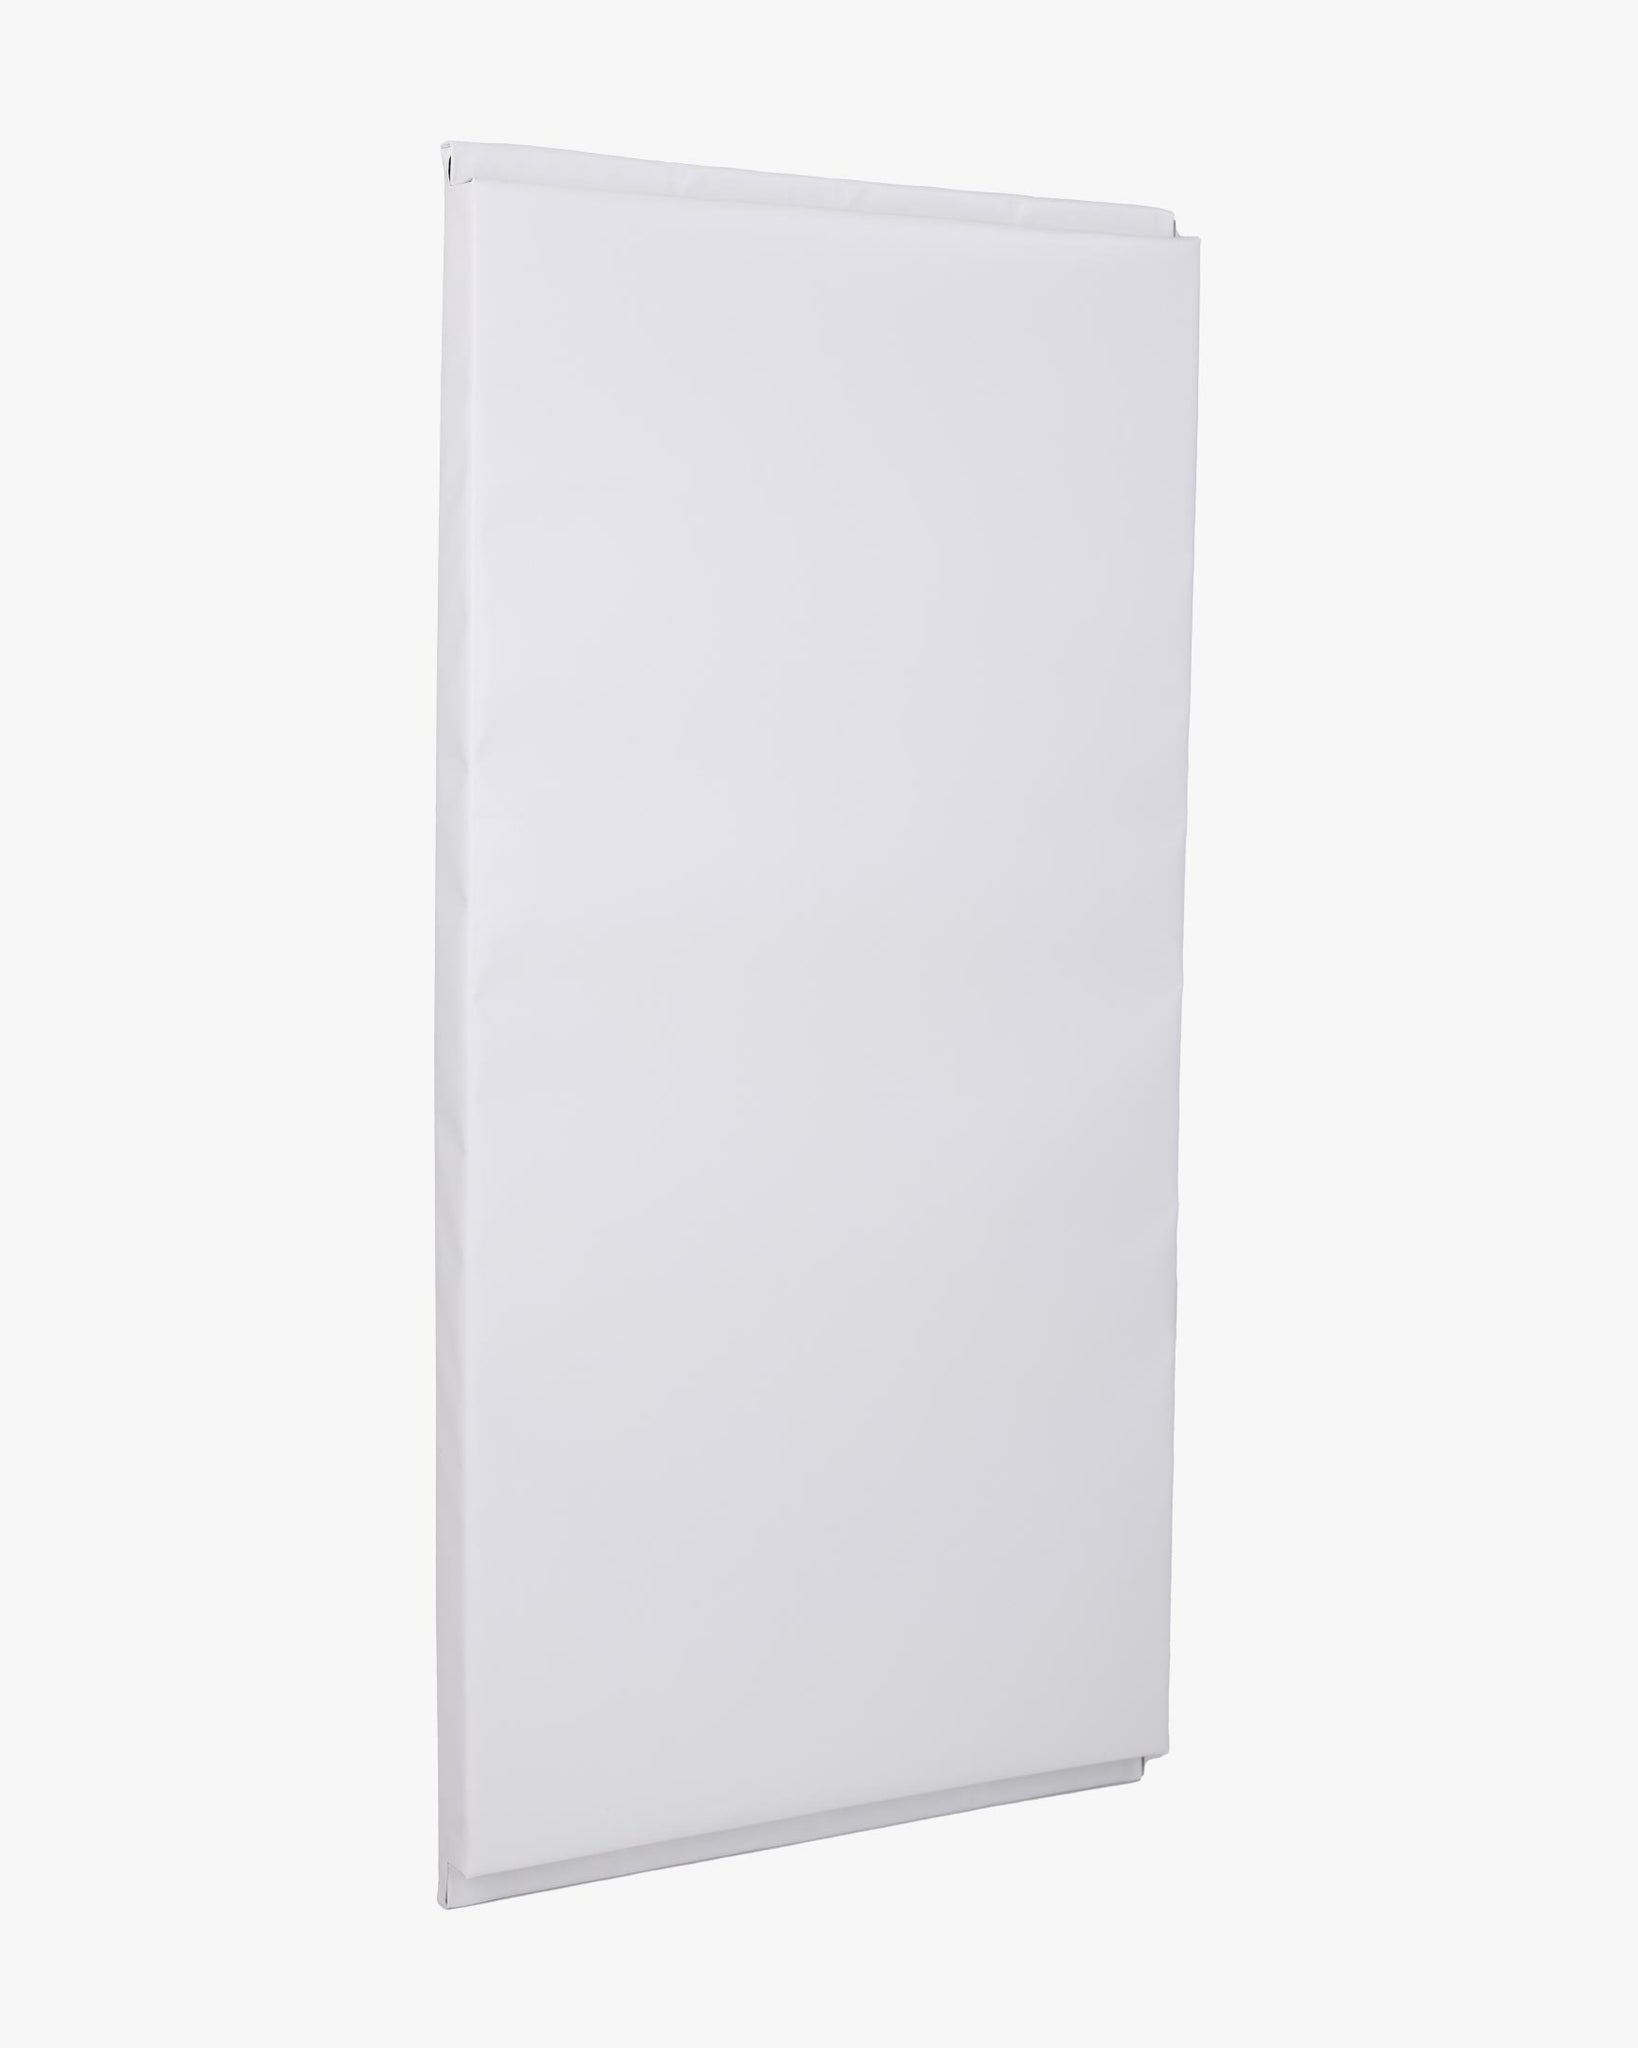 2' X 4' Wall Pad White